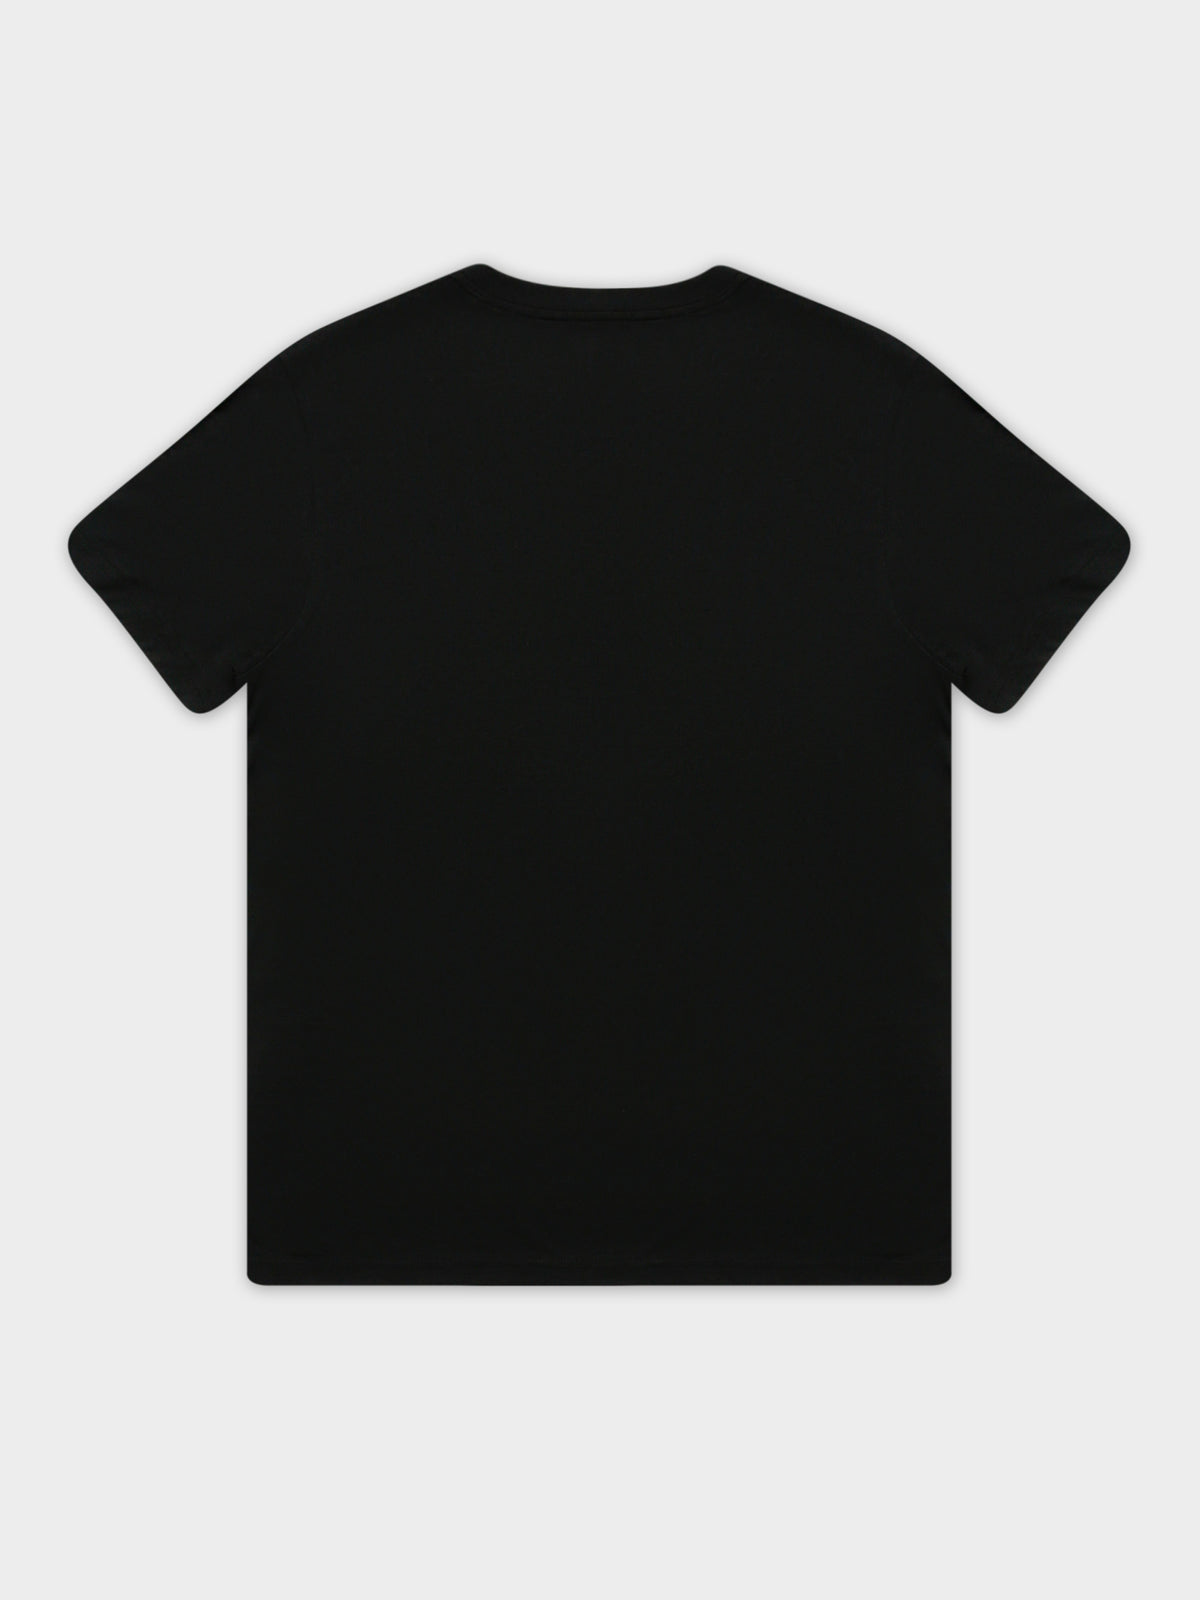 Classic Crew T-Shirt in Black